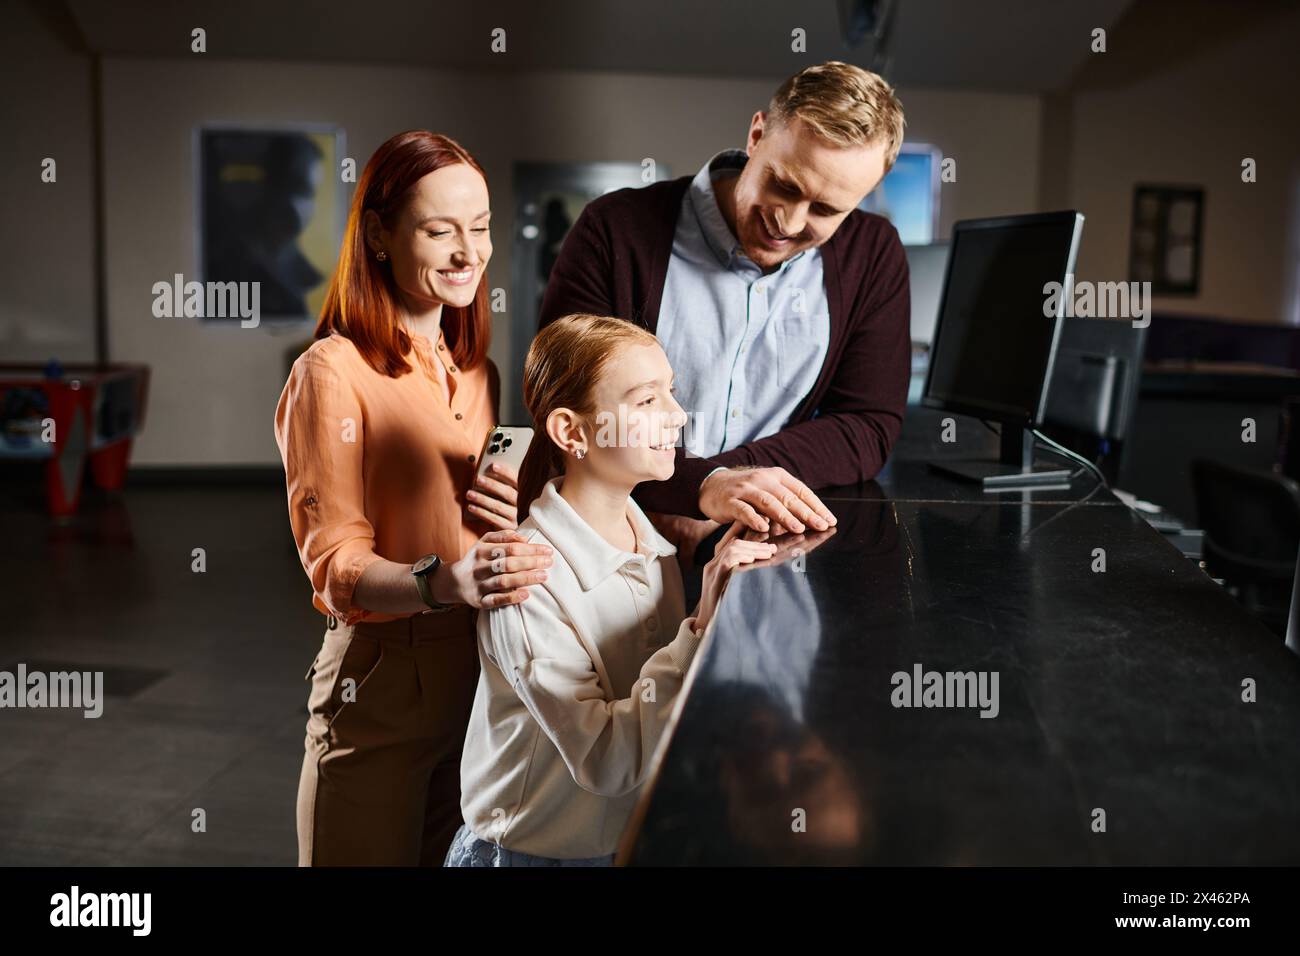 Ein Mann, eine Frau und ein Kind stehen zusammen, lächeln und genießen einen Filmausflug als glückliche Familie. Stockfoto